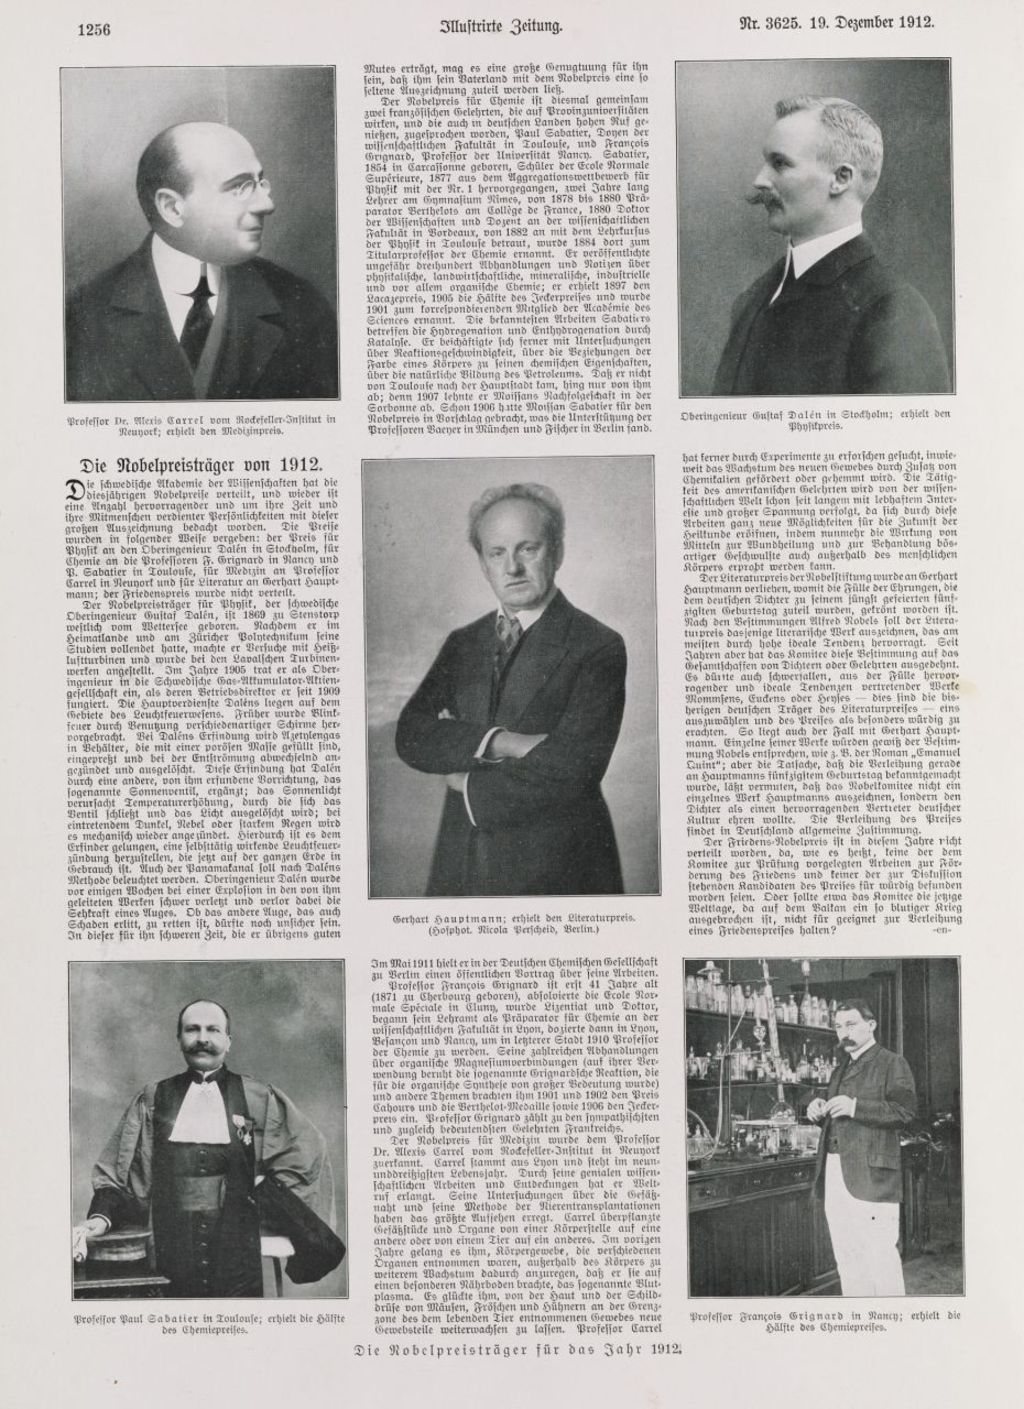 Zeitung: "Die Nobelpreisträger für das Jahr 1912"